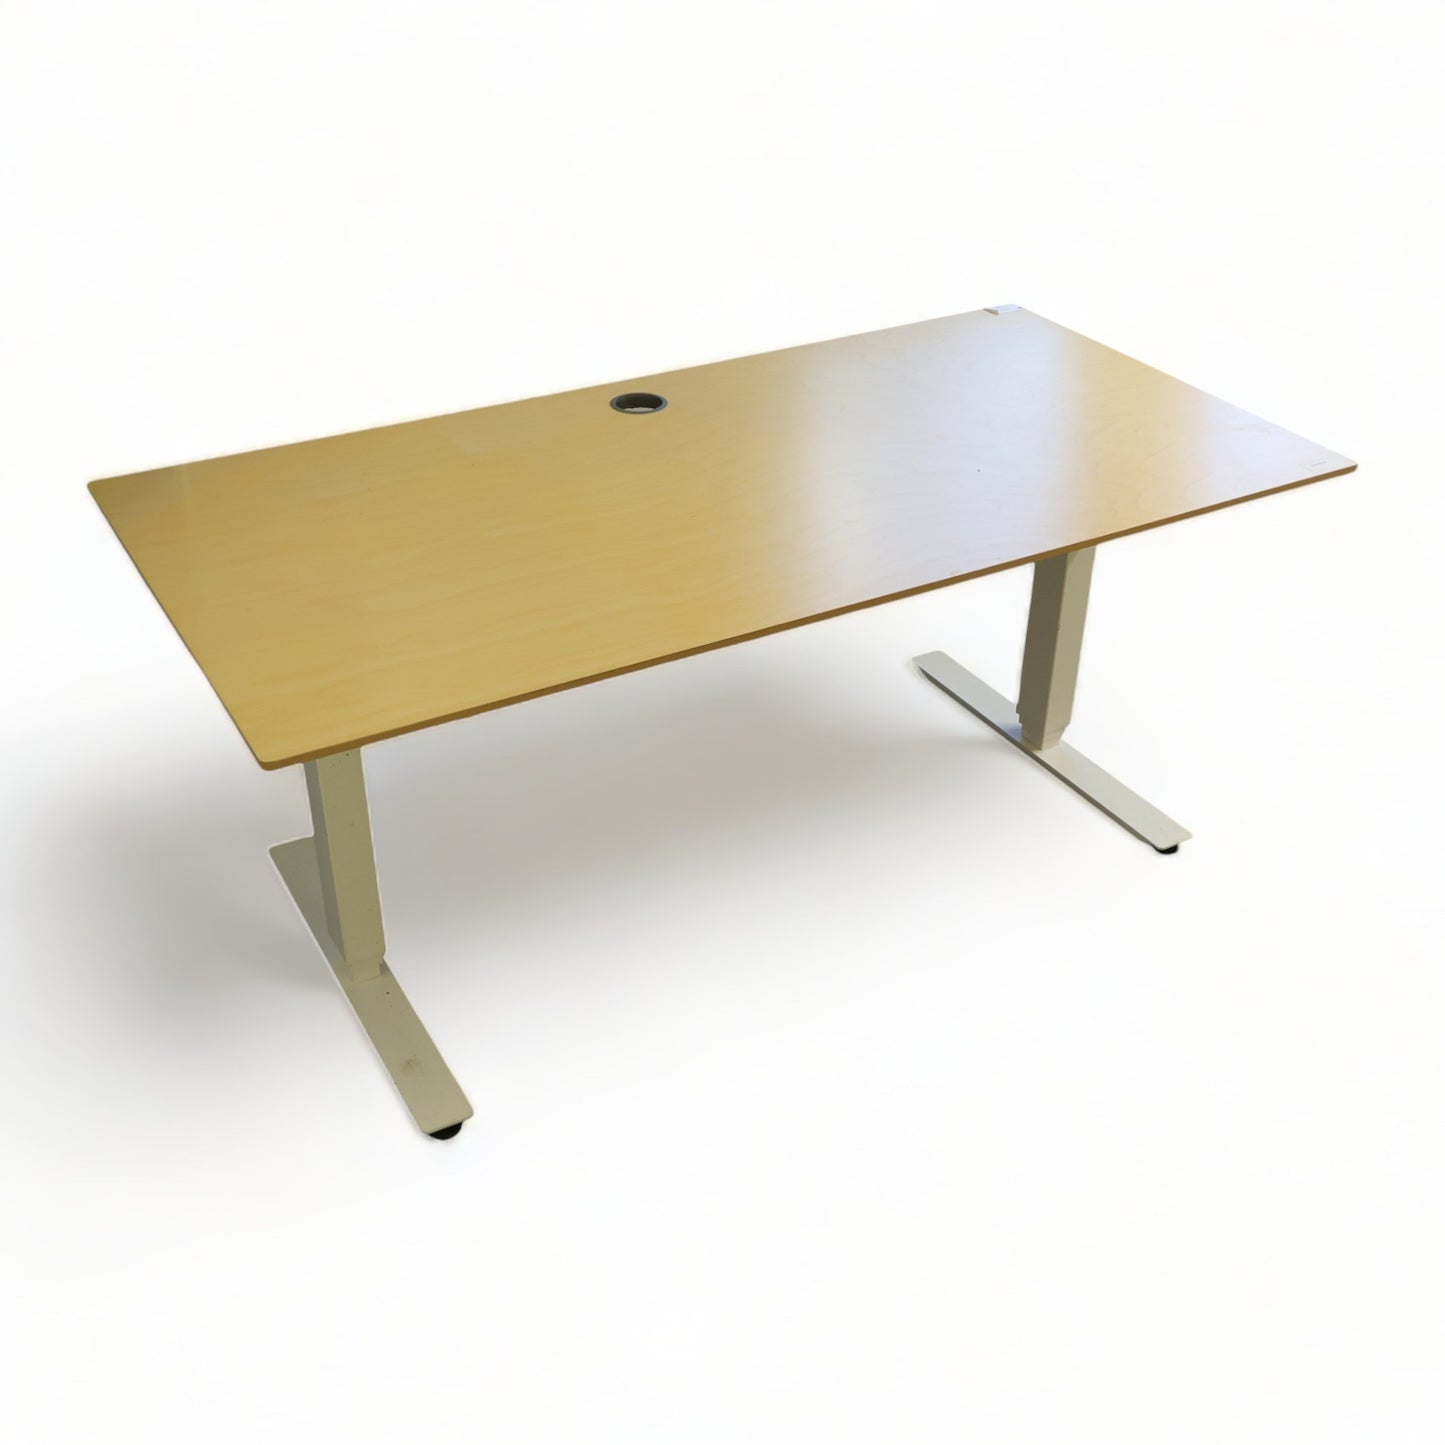 Kvalitetsikret | 160x80, elektrisk hev/senk skrivebord med hvitt understell